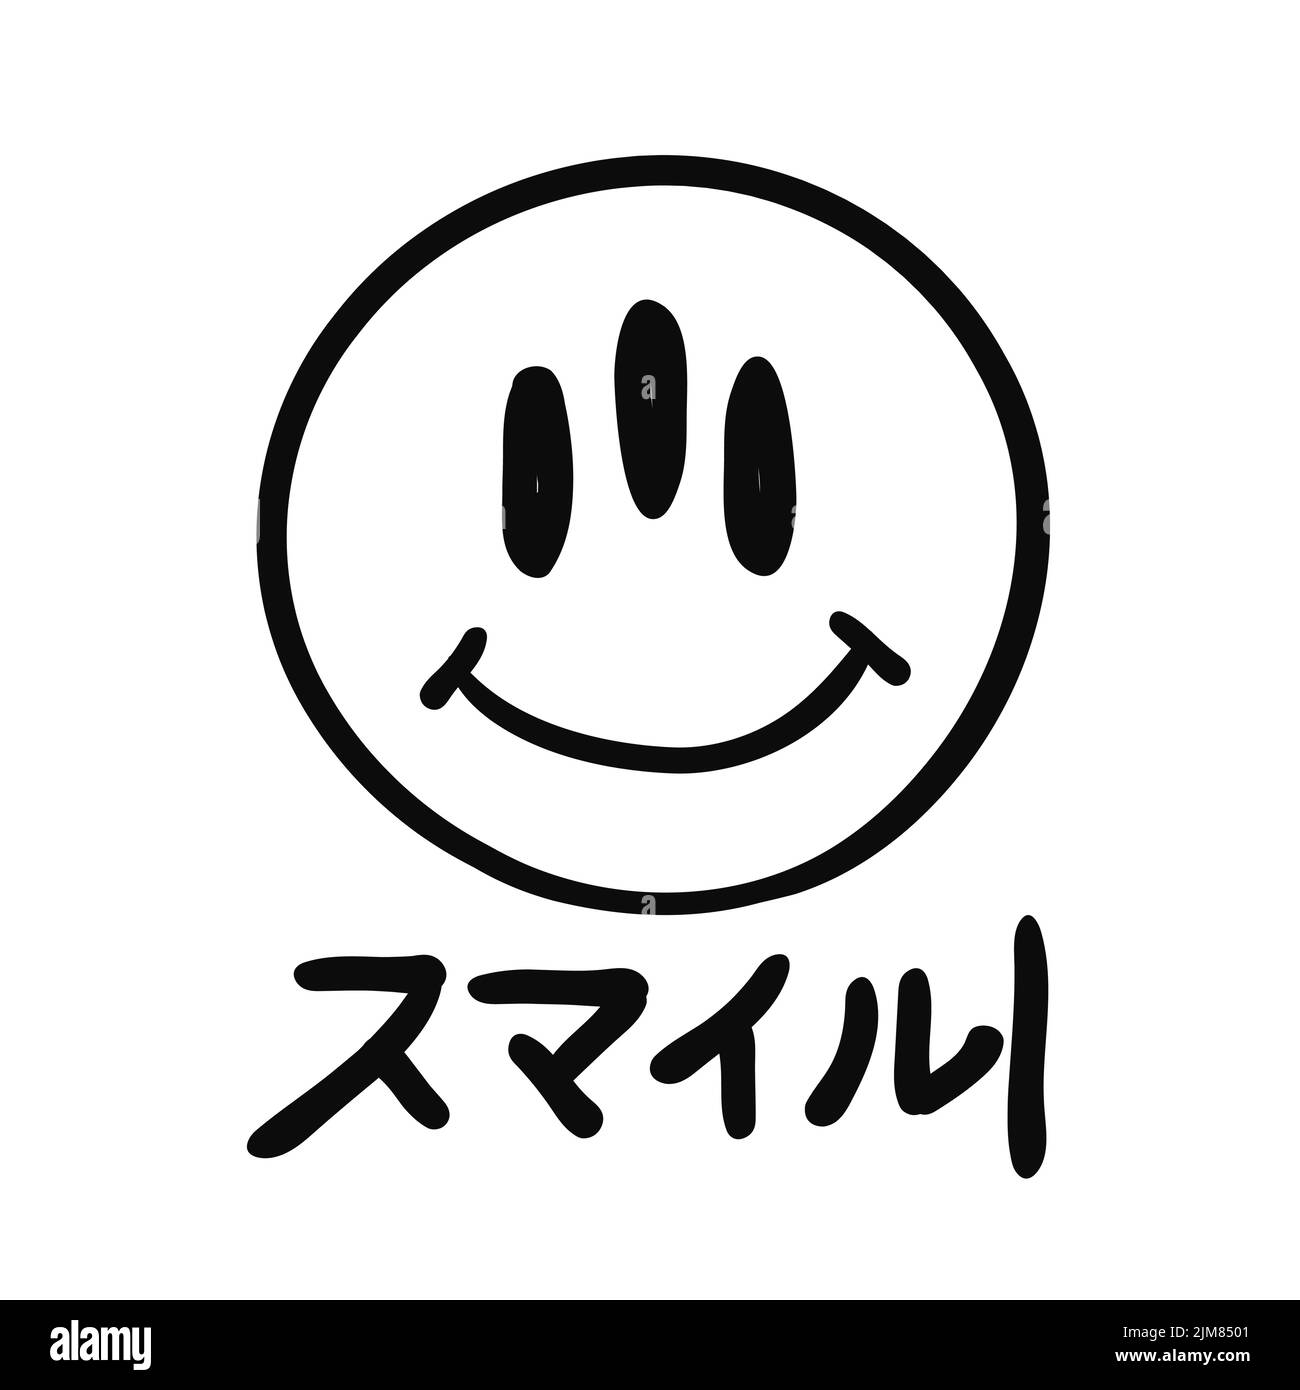 Übersetzung:'Smile'.Emoji und Japan Wort smile.Vector grafische Illustration Logo Design.Smile Gesicht, Glitch-Druck für Logo, T-Shirt, Poster Art Stock Vektor